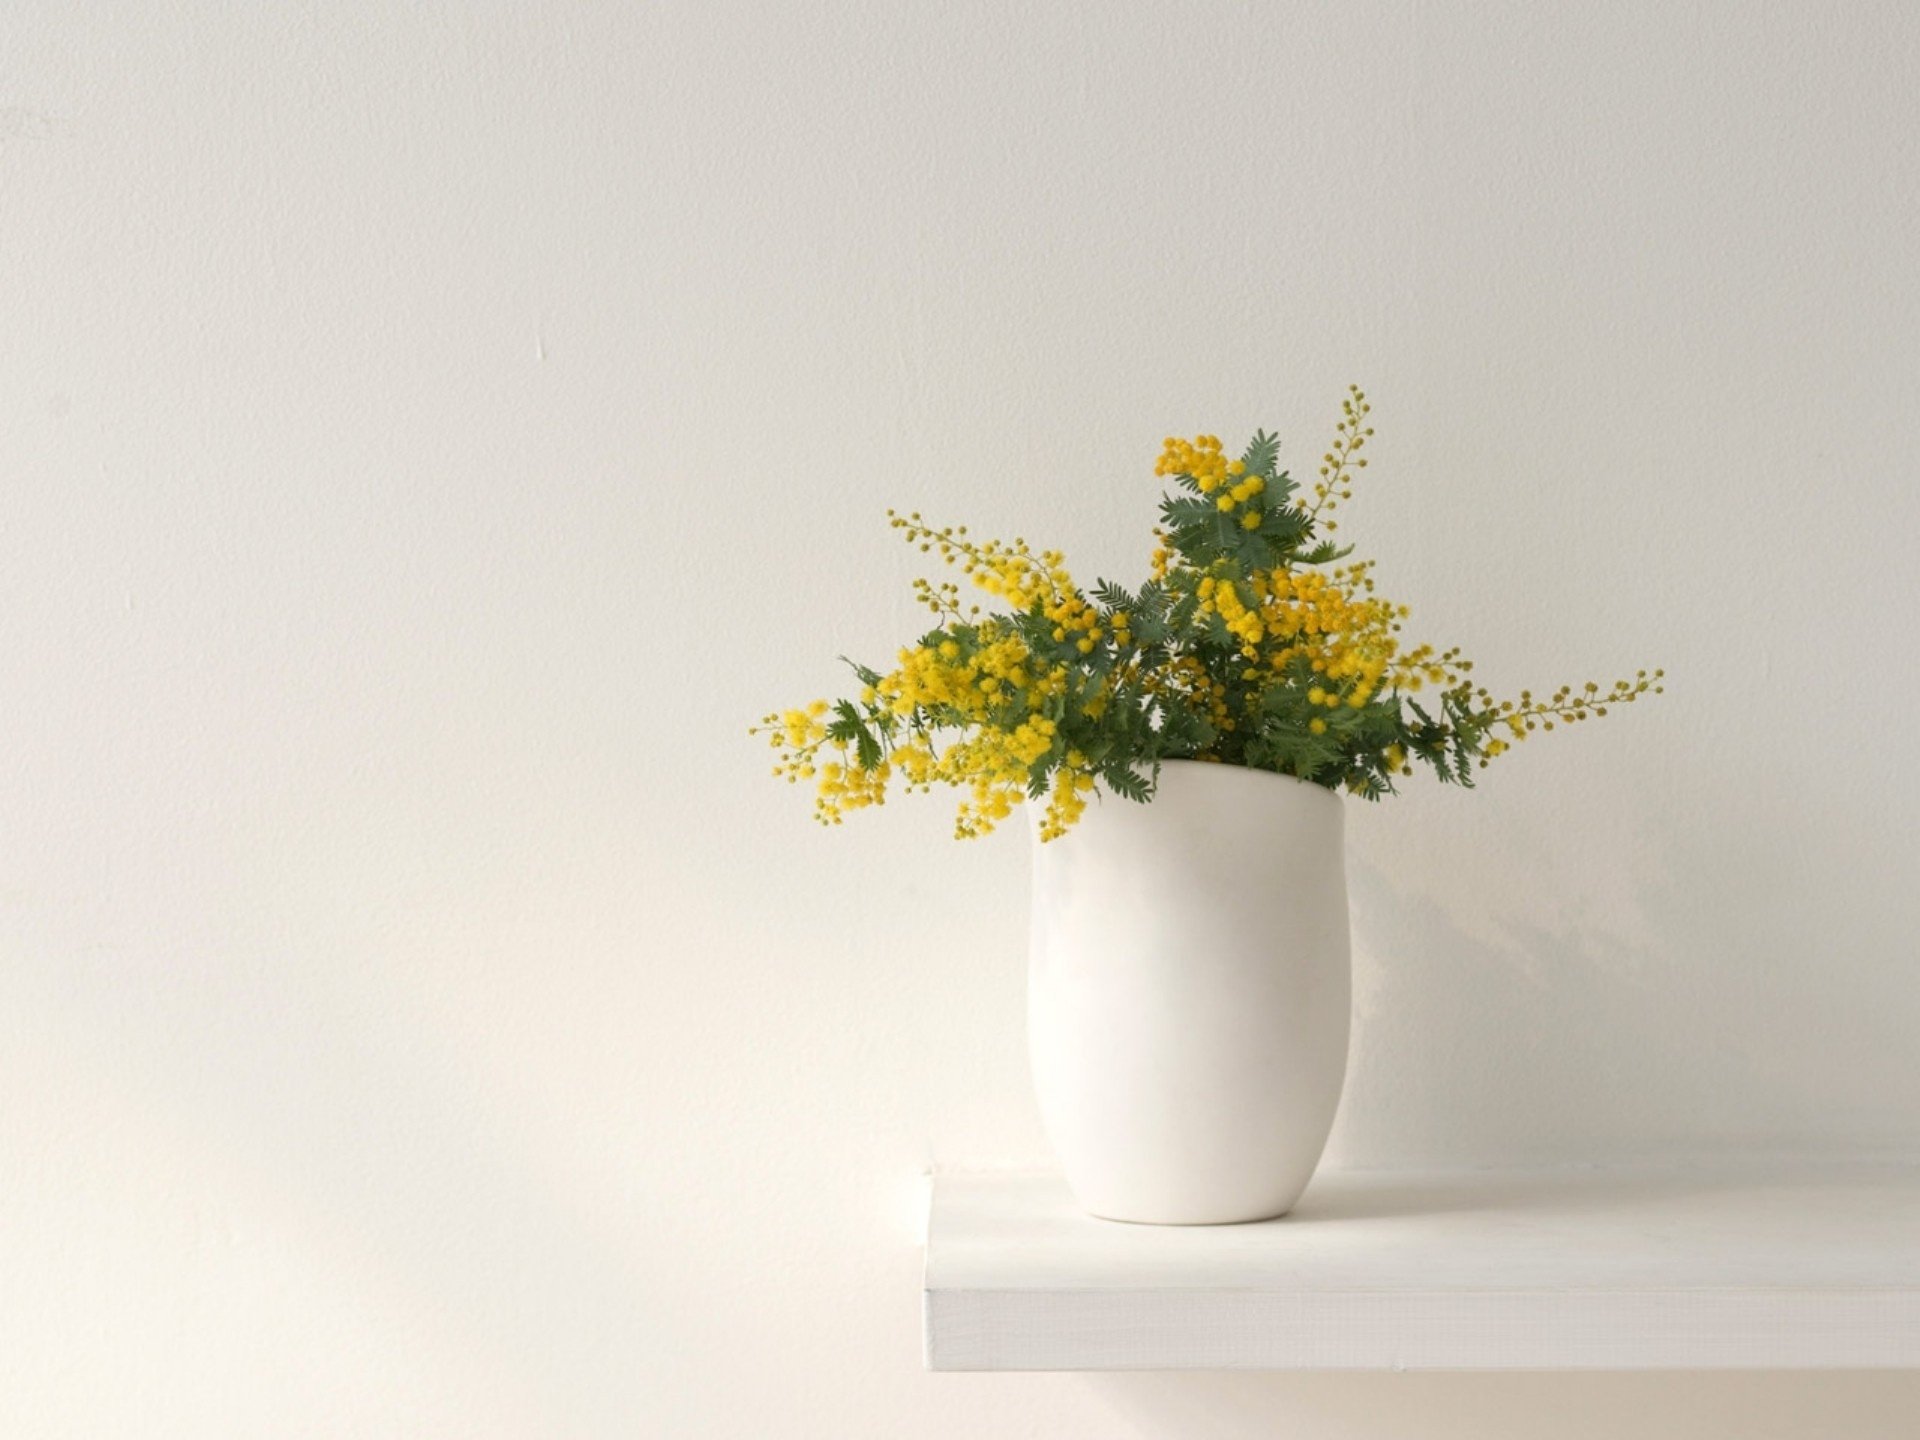 Обои в стиле вазы. Цветы Минимализм. Ваза с цветами. Желтая ваза с цветами. Минимализм в цветочных композициях.